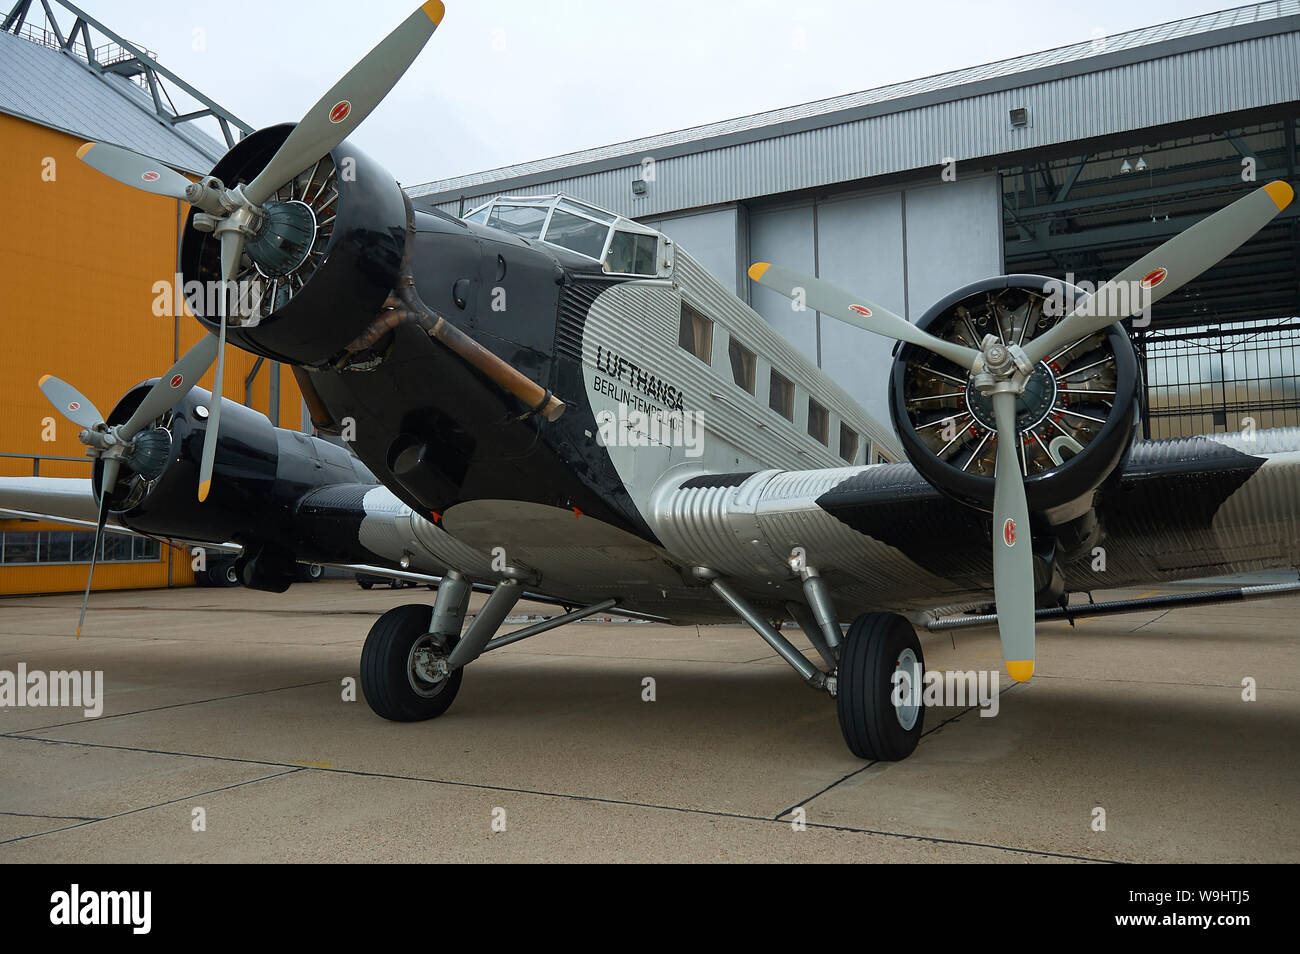 Ju 52 Lufthansa historiques à base d'entretien Hambourg Lufthansa Banque D'Images